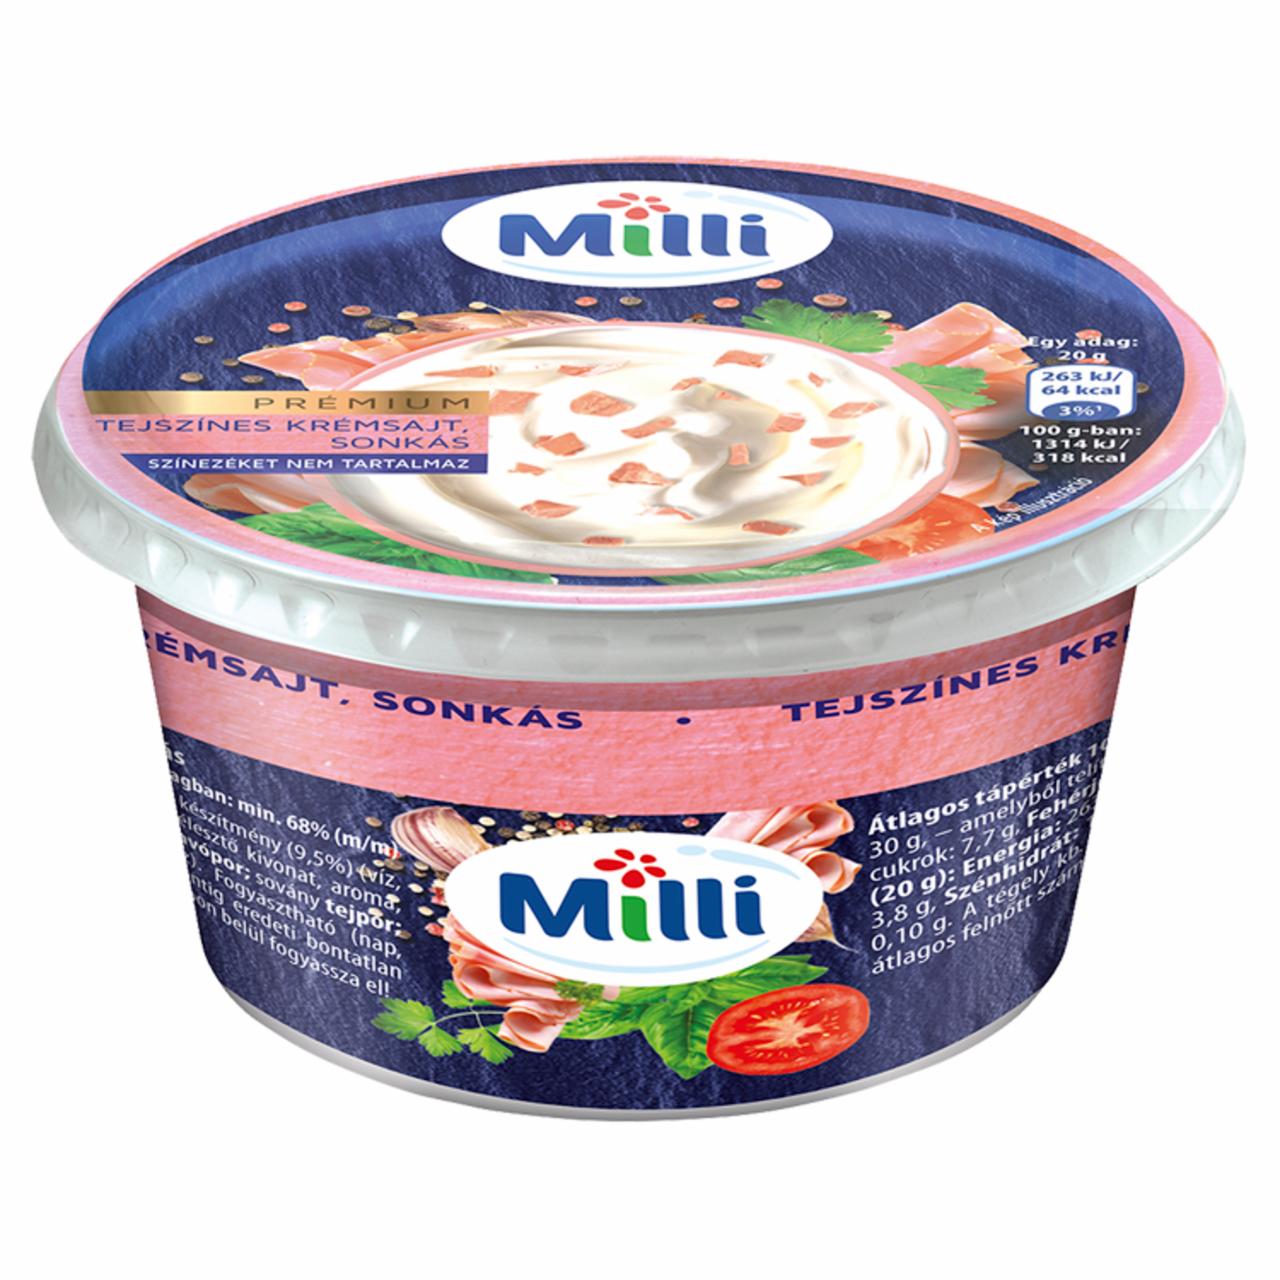 Képek - Milli Prémium tejszínes krémsajt, sonkás 125 g